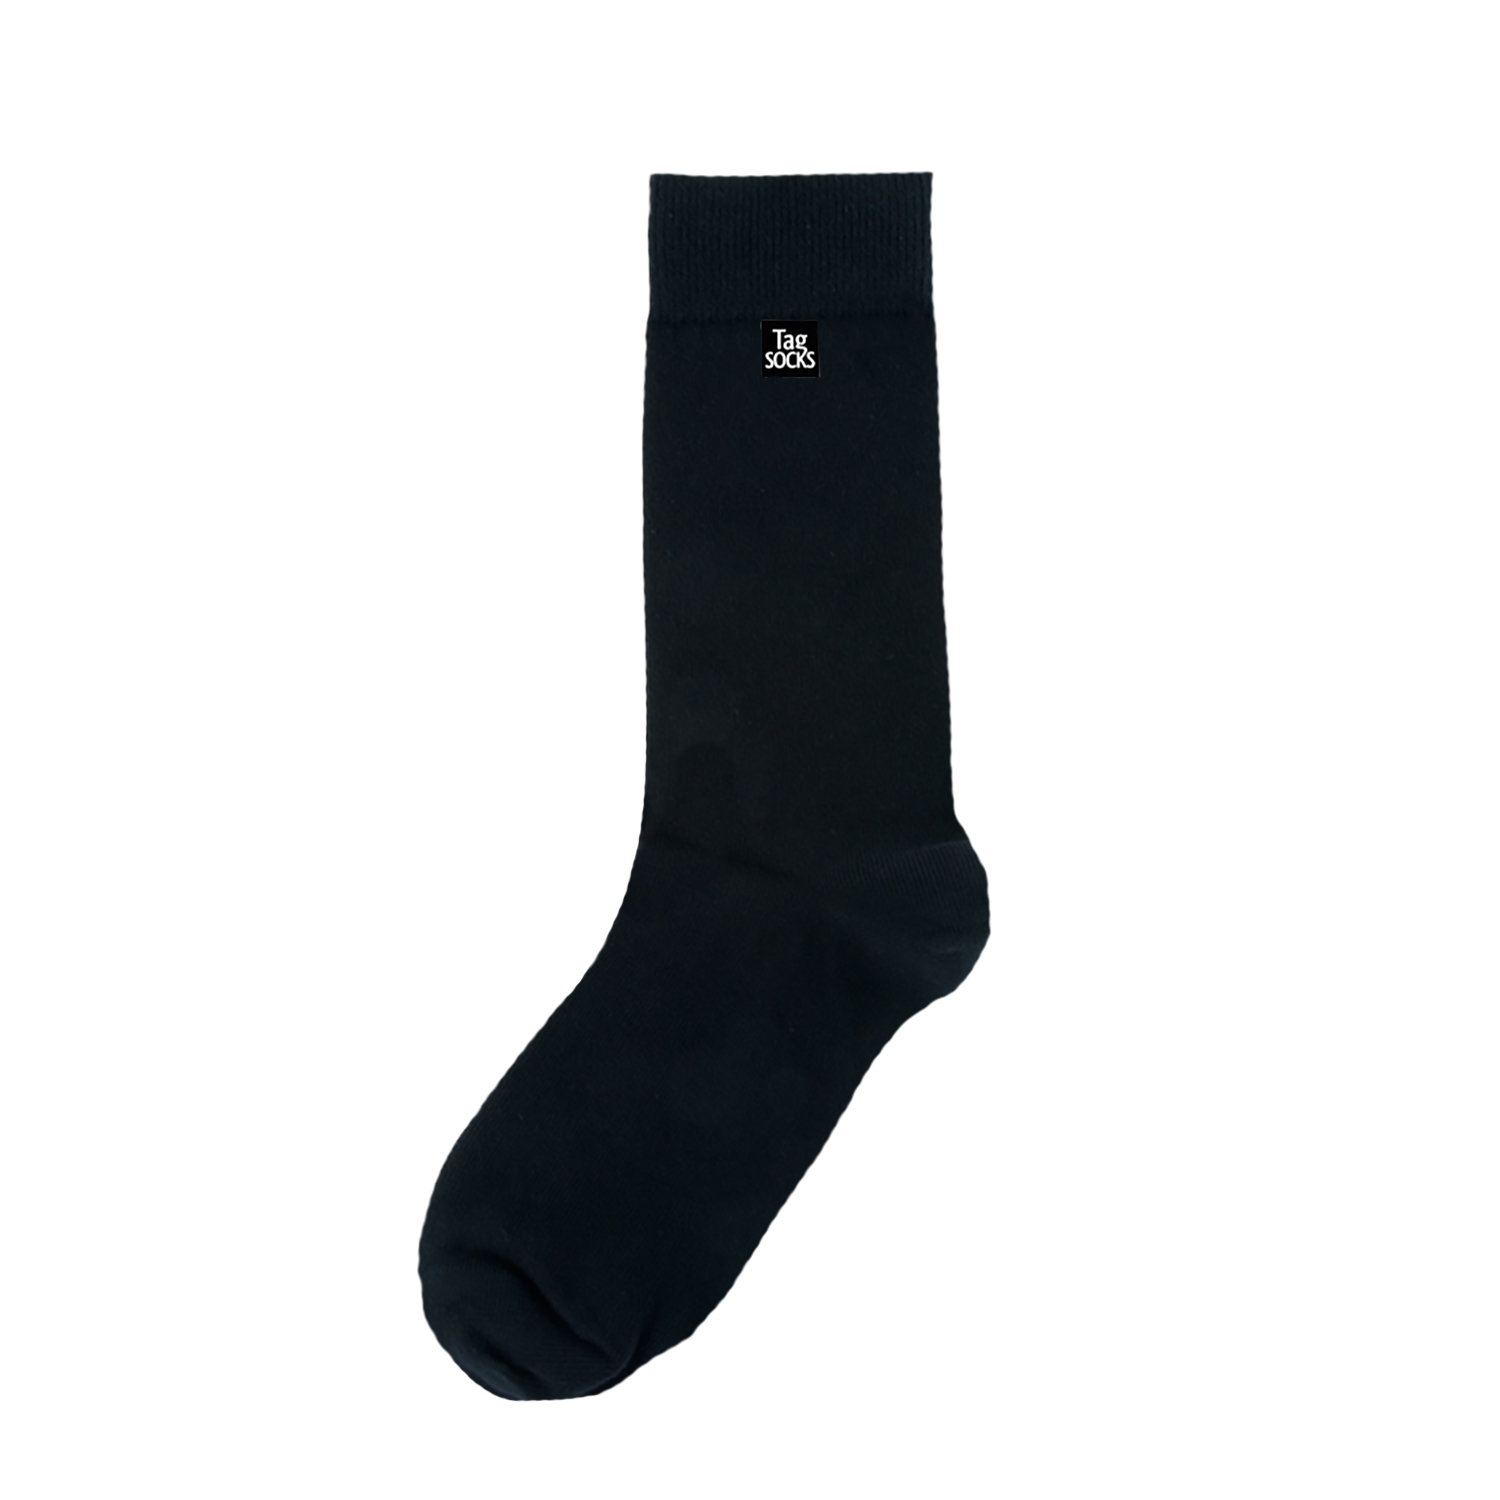 Tag Socks - Single Black